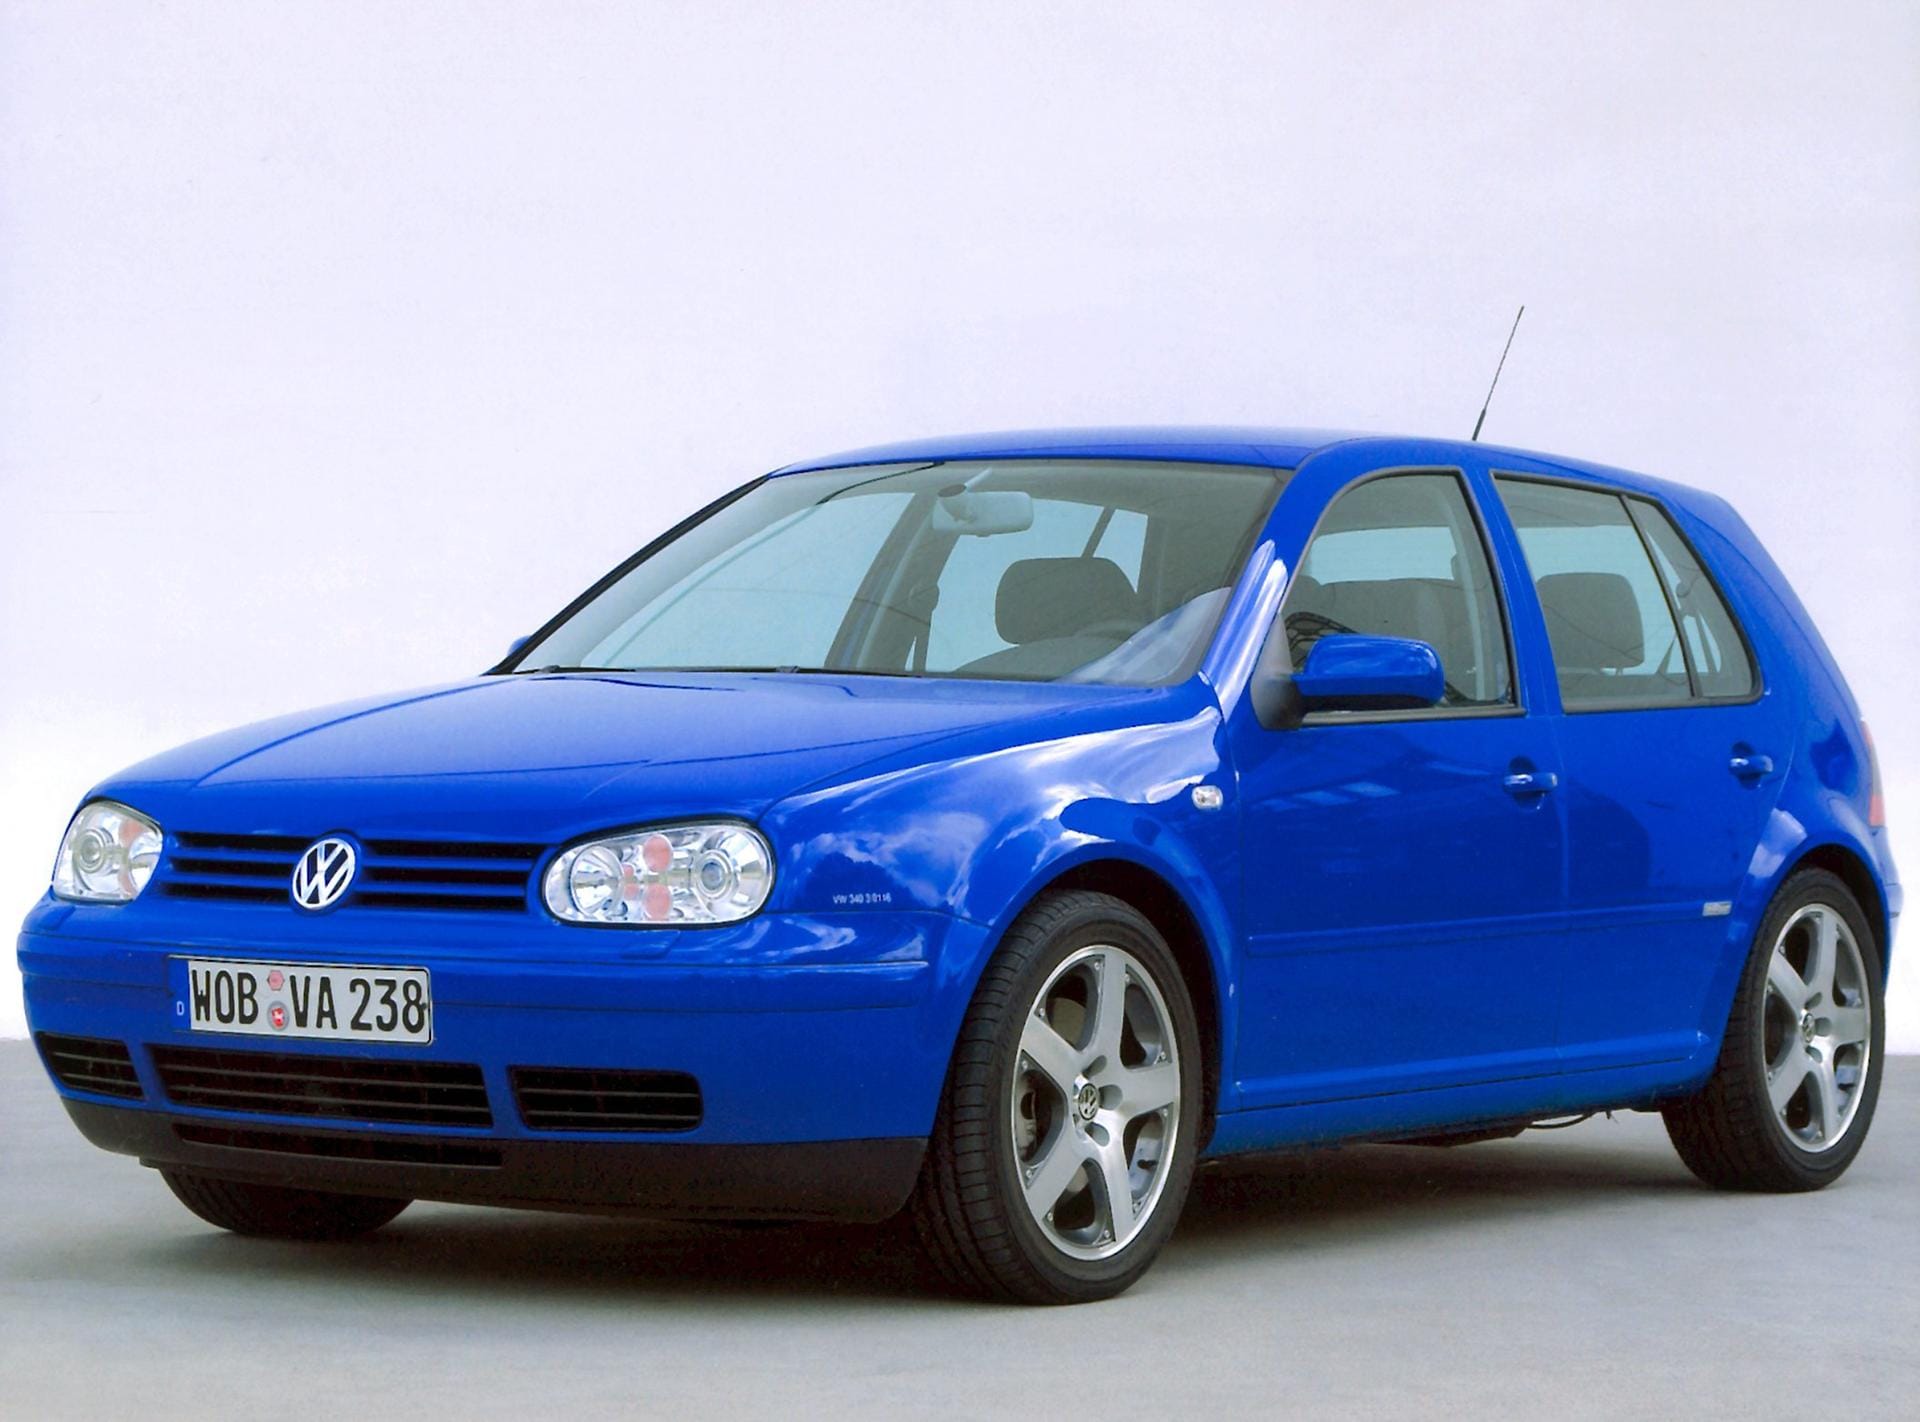 Ein blauer VW Golf IV: Ab sofort gilt die Kompaktklasse als ernsthafte Alternative zur Mittelklasse.